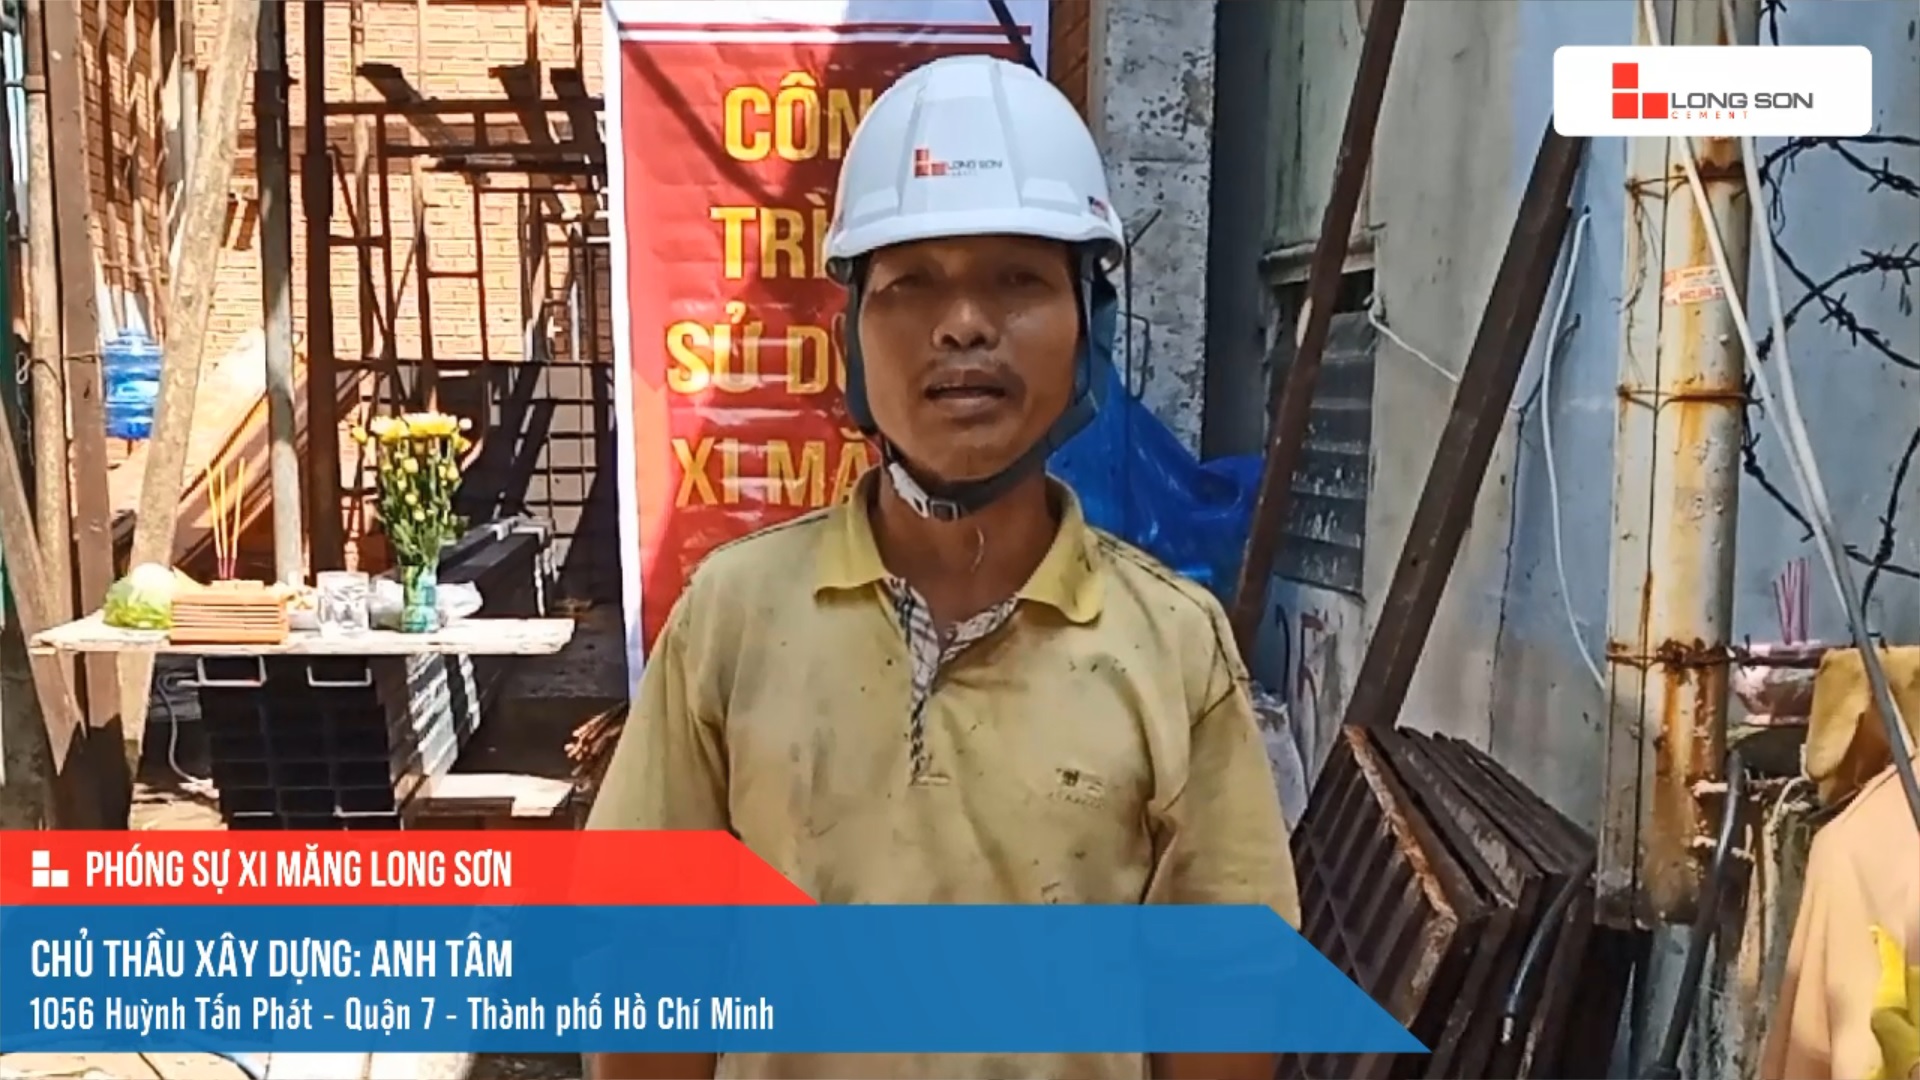 Phóng sự công trình sử dụng xi măng Long Sơn tại Hồ Chí Minh ngày 21/10/2021